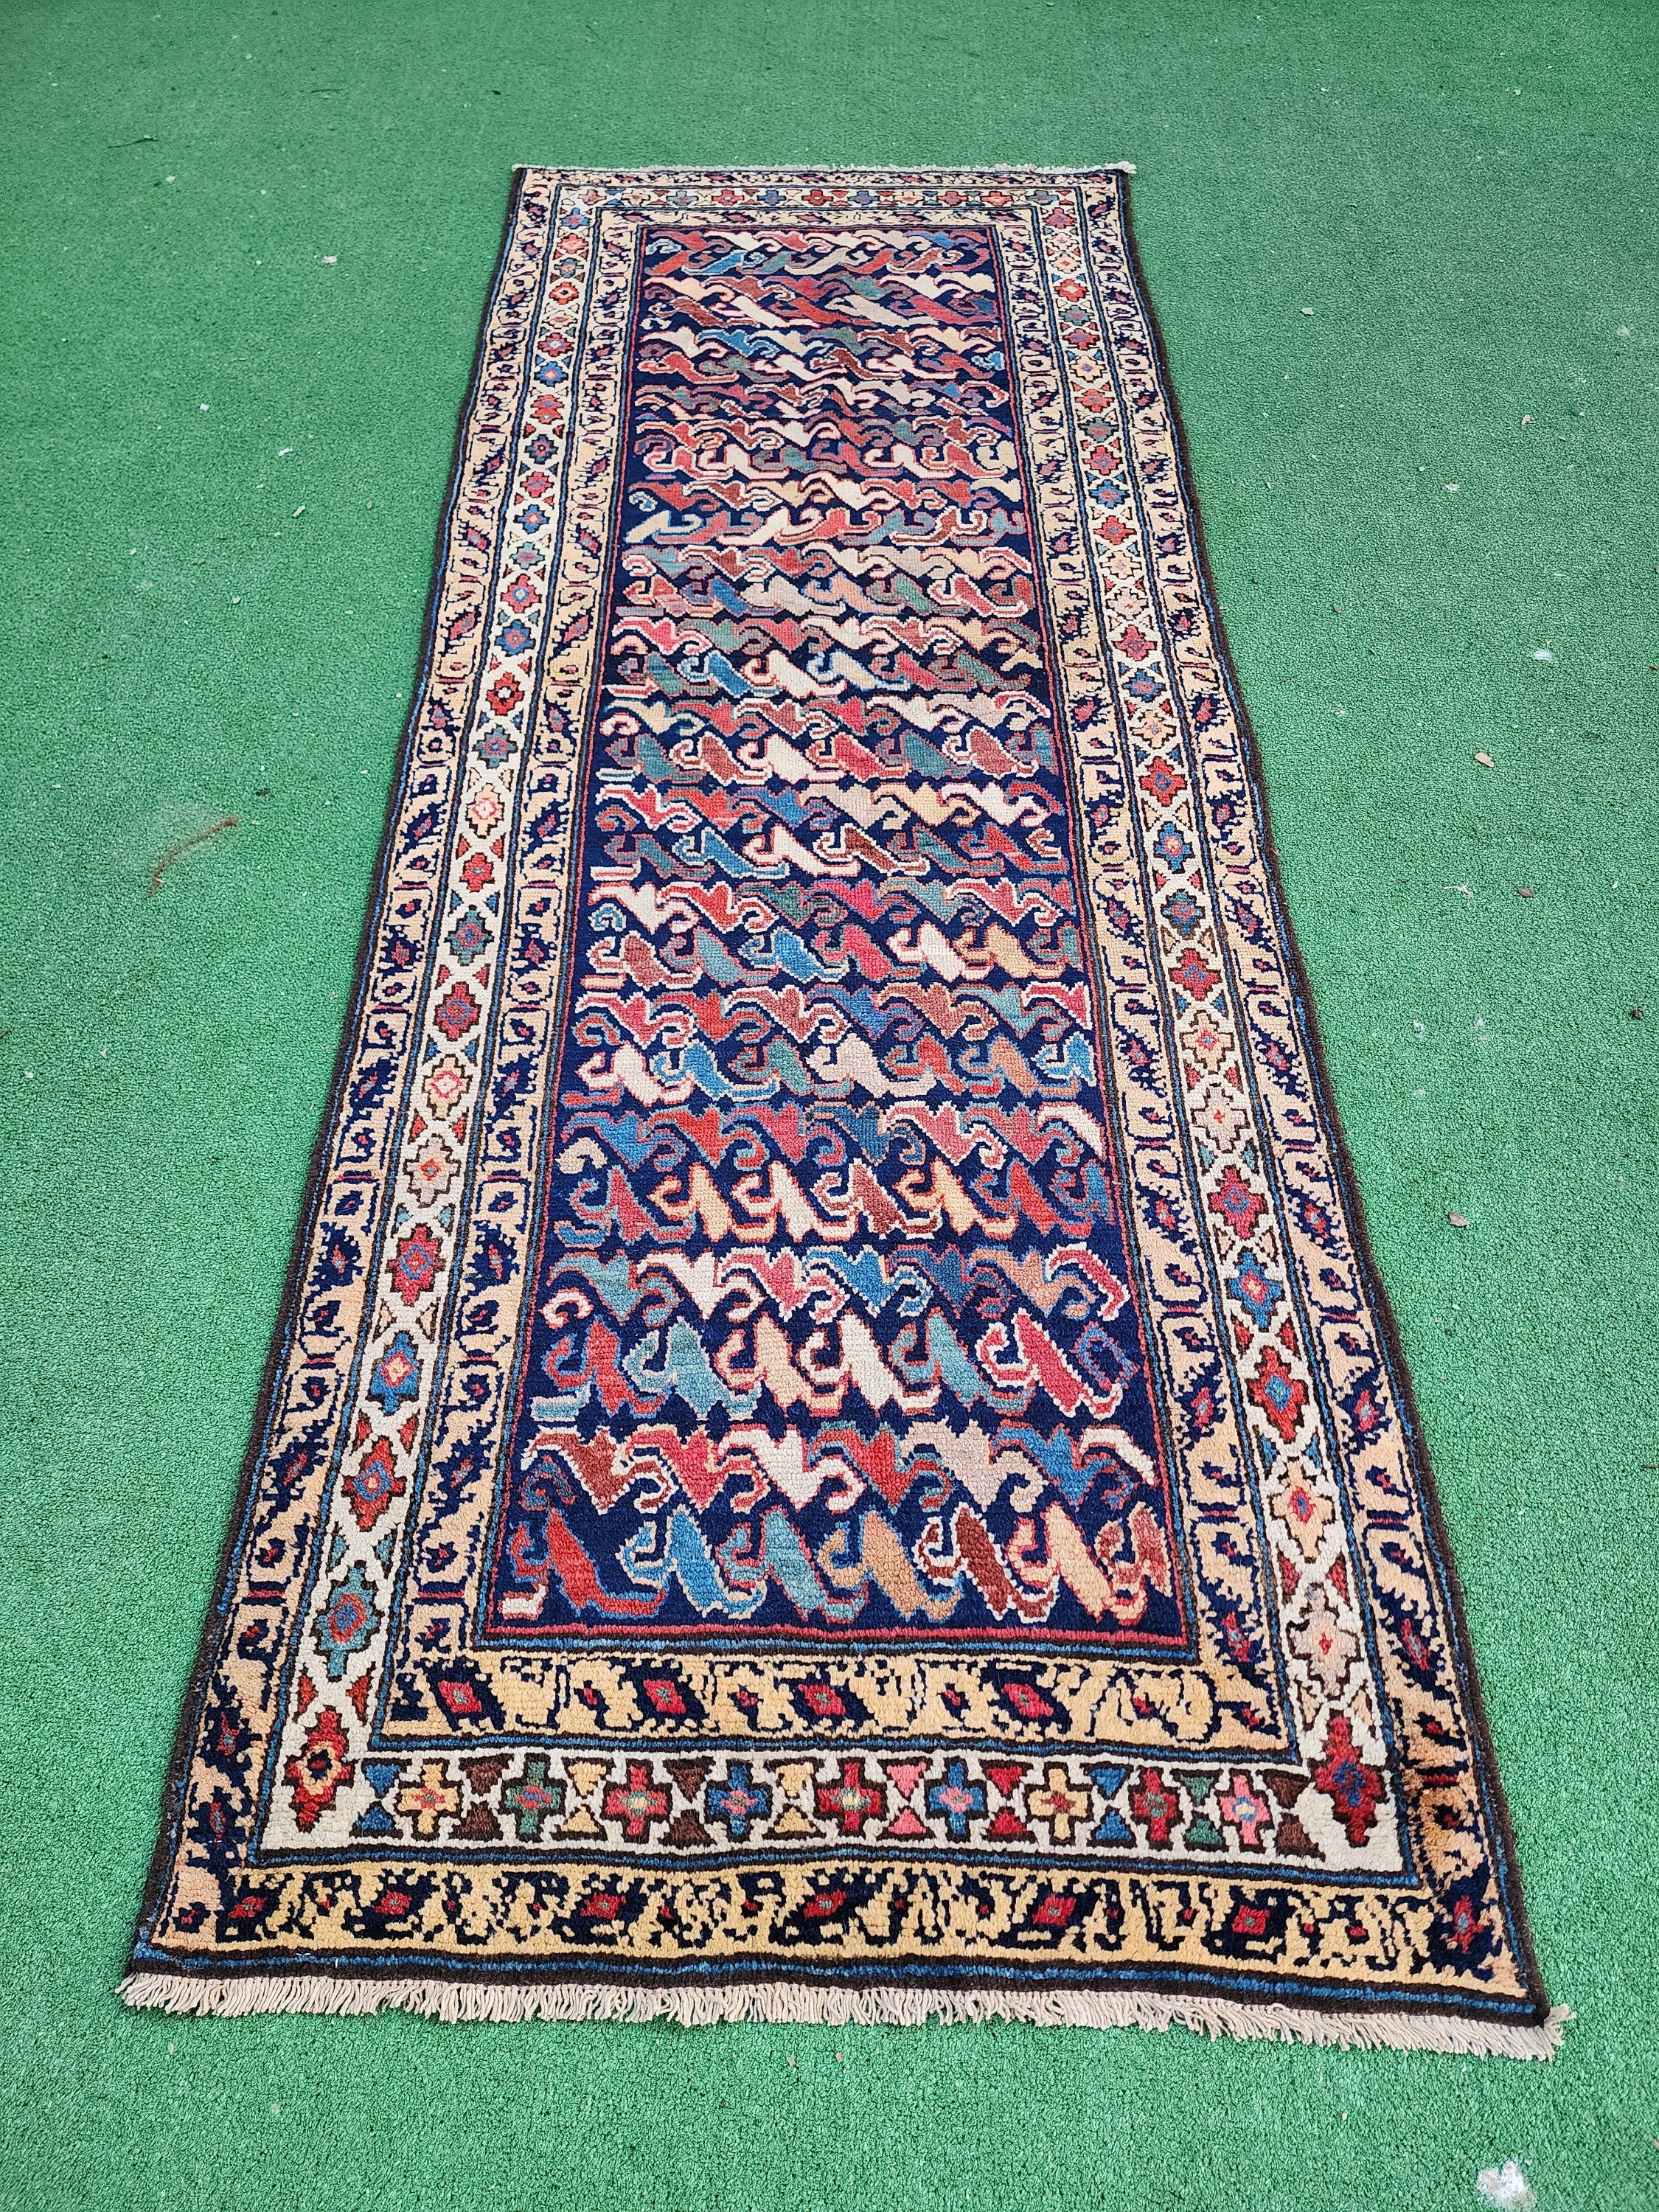 Antique Persian Hallway Runner Rug 8 x 3 ft,